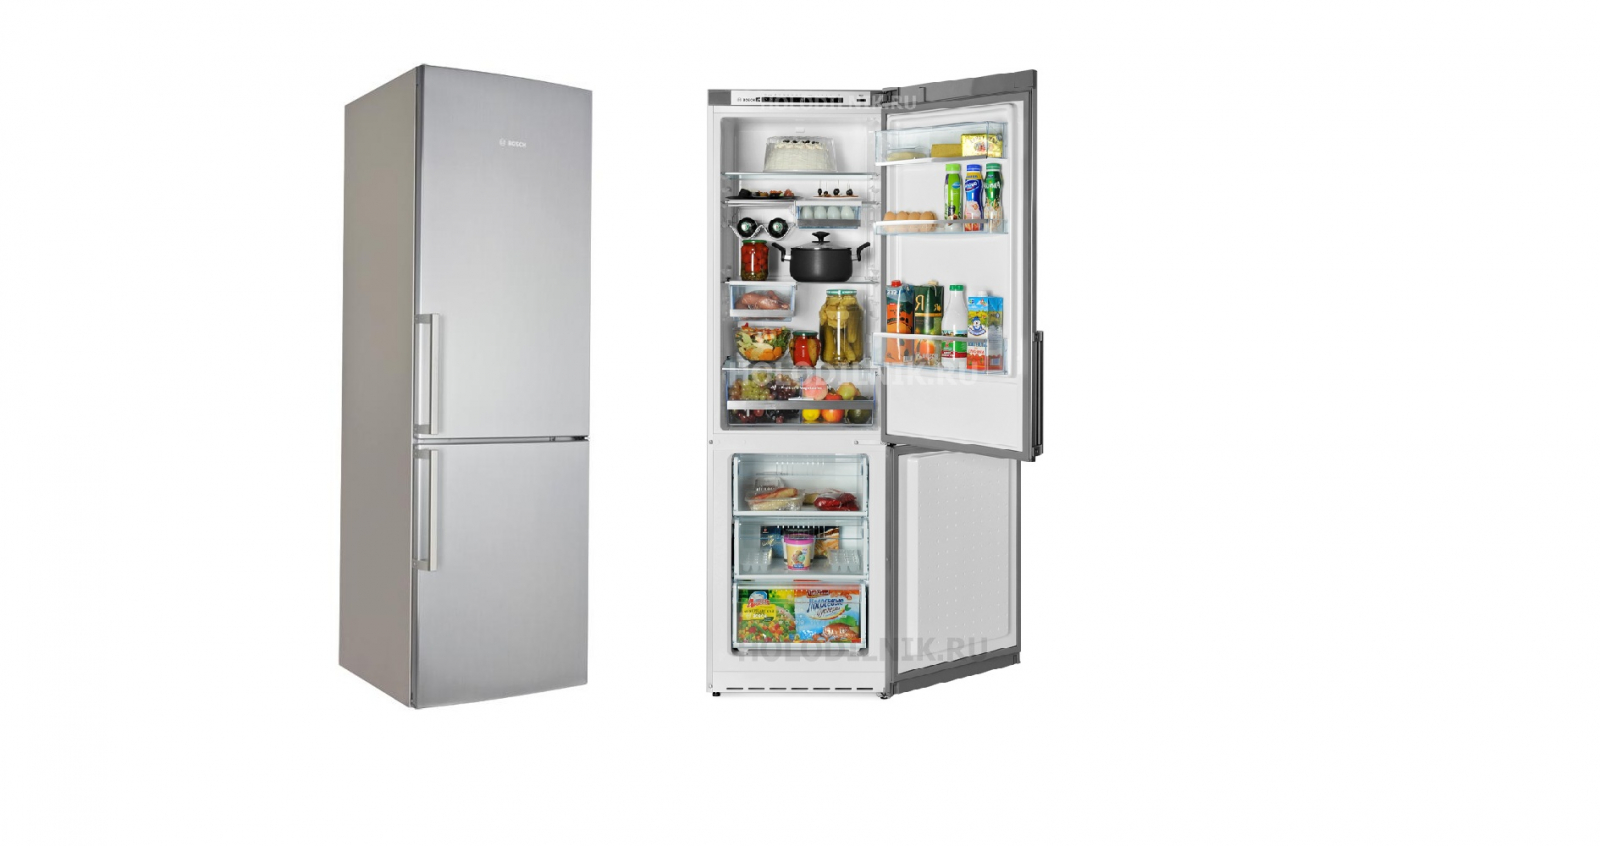 холодильник bosch kgs36xl20r, купить в Красноярске холодильник bosch kgs36xl20r,  купить в Красноярске дешево холодильник bosch kgs36xl20r, купить в Красноярске минимальной цене холодильник bosch kgs36xl20r